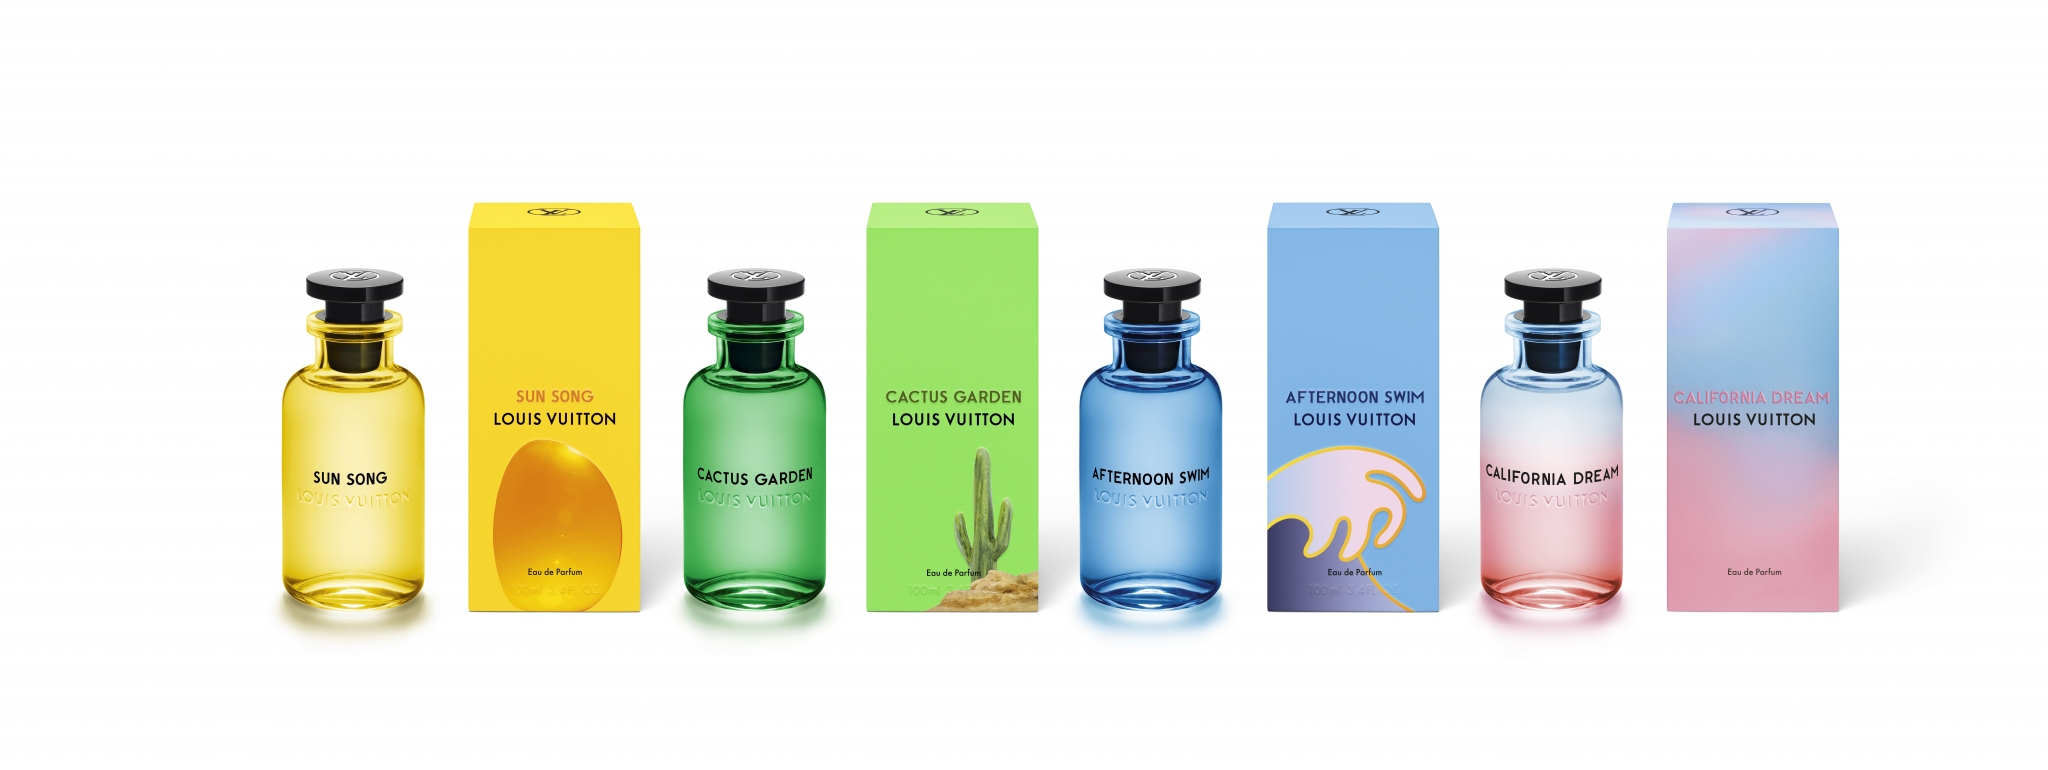 California Dream Louis Vuitton perfume - a novo fragrância